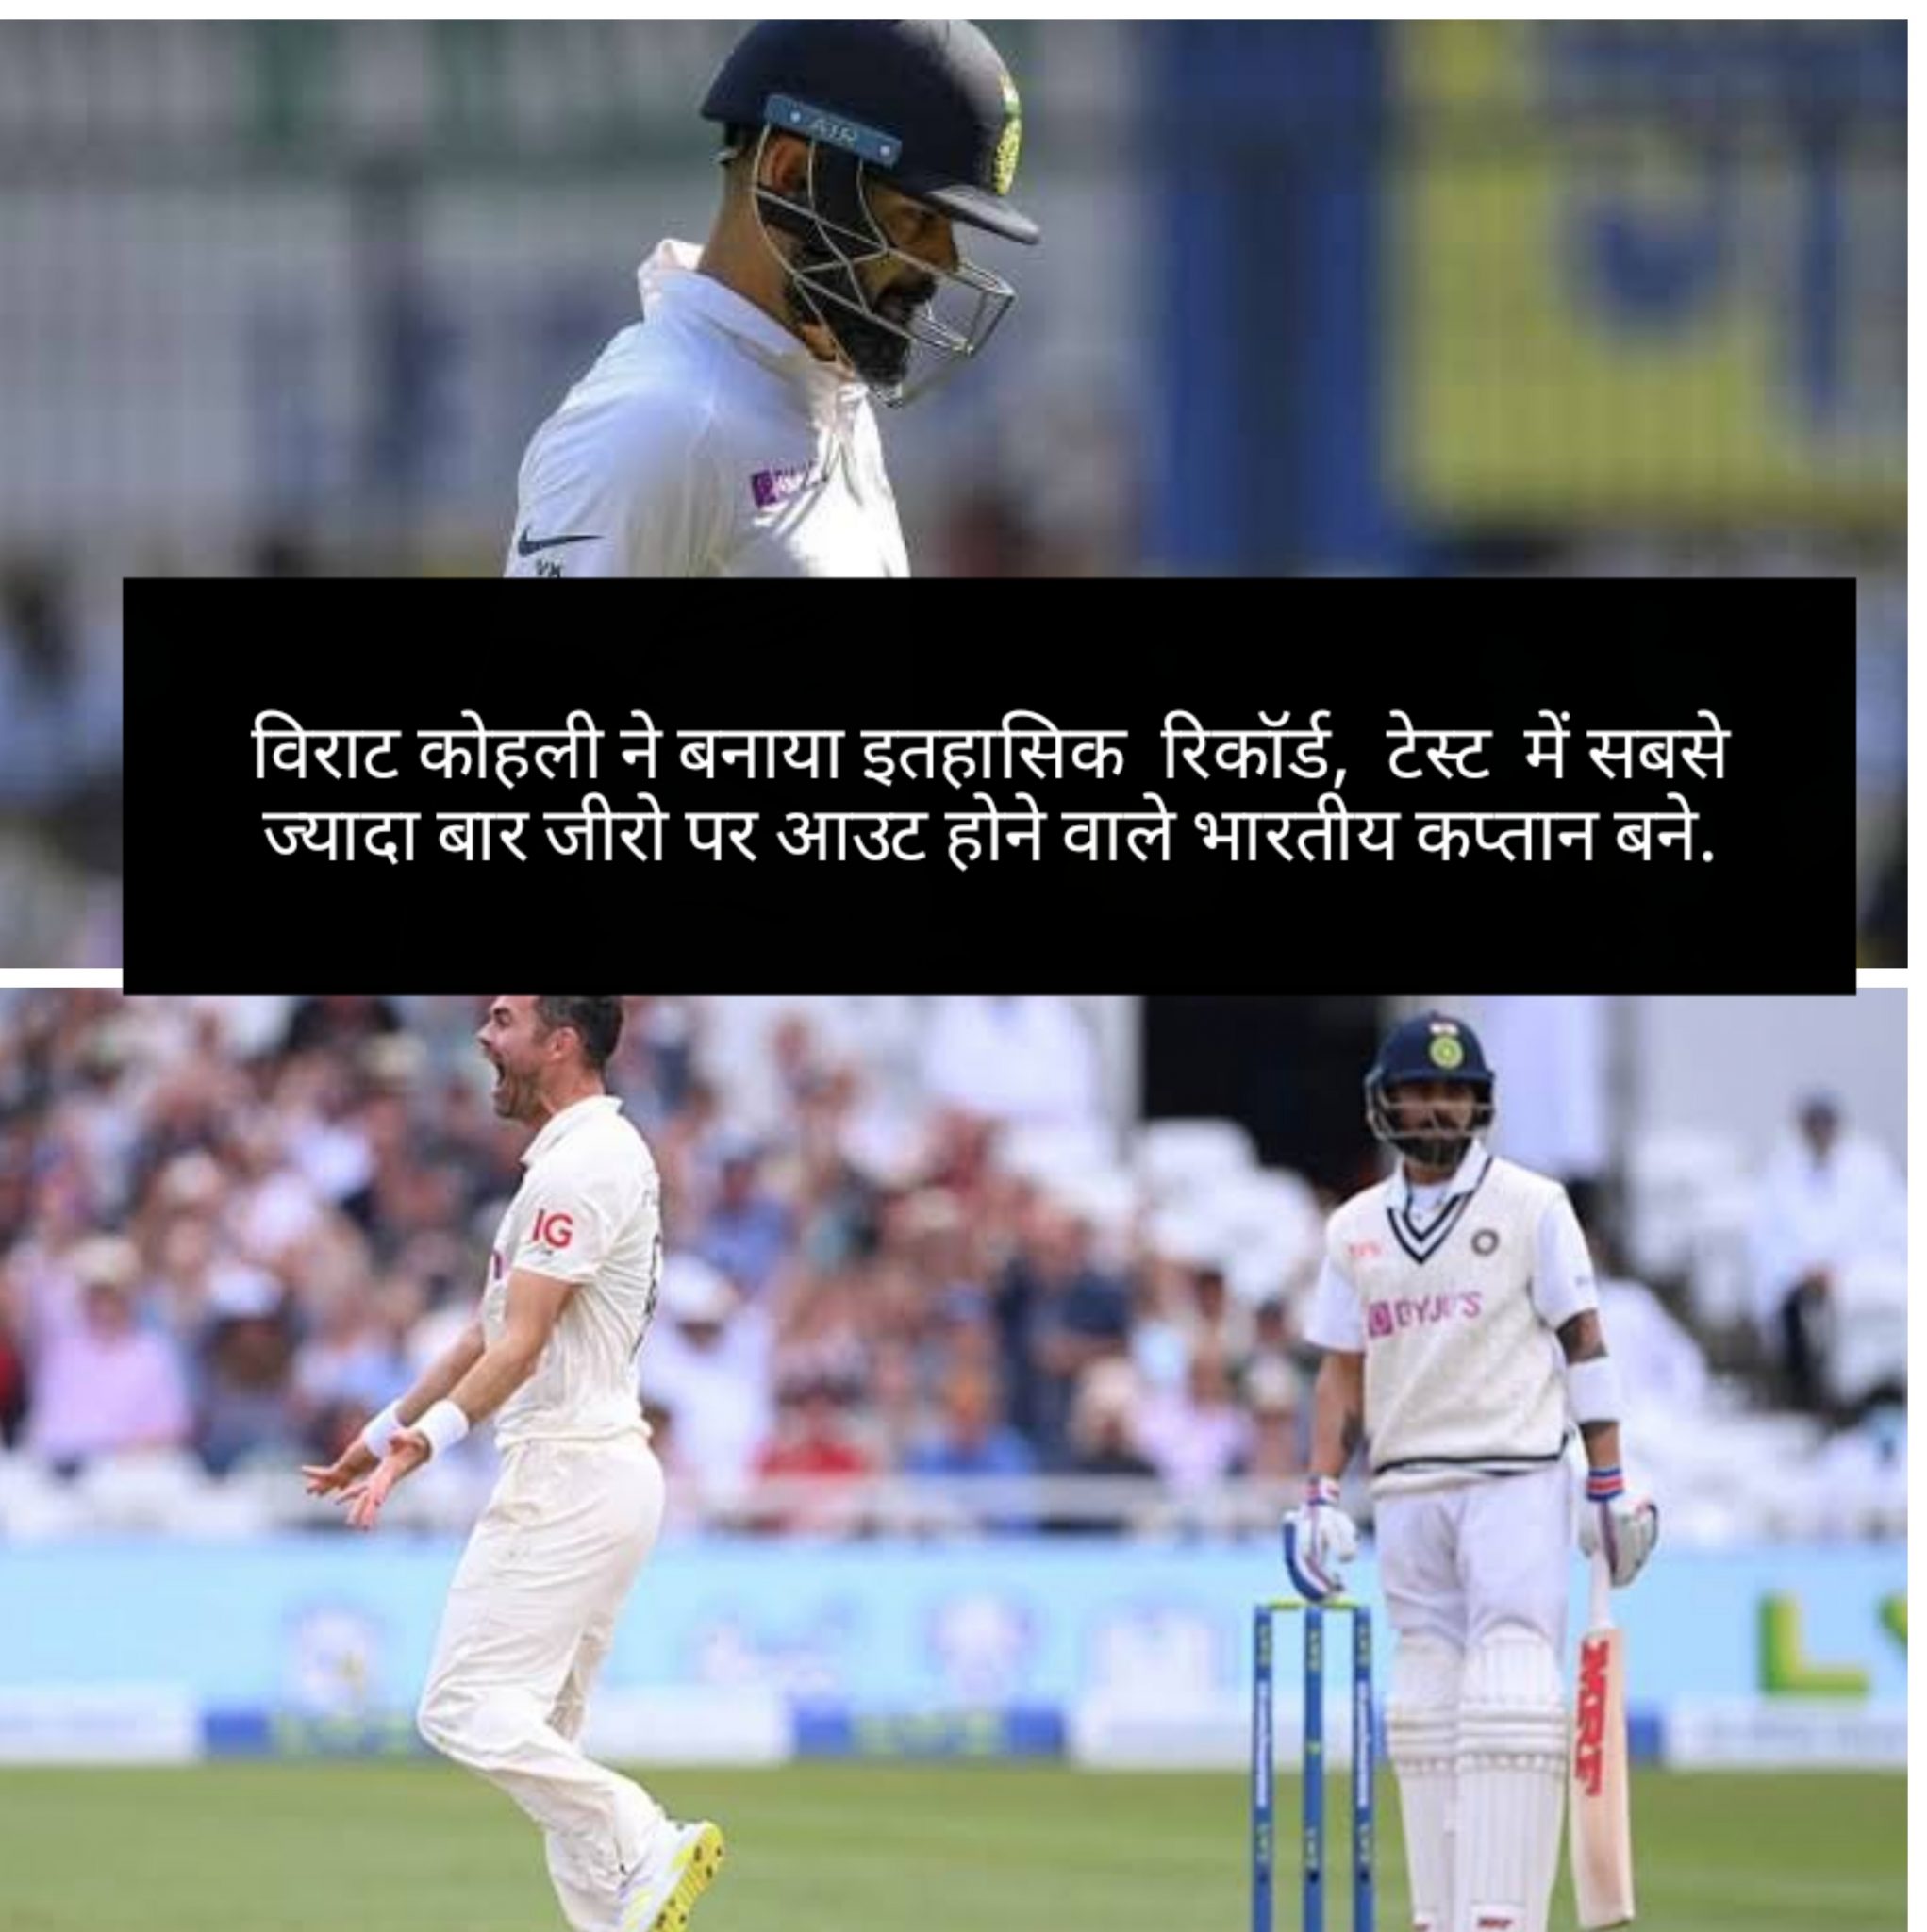 विराट कोहली ने बनाया इतहासिक  रिकॉर्ड,  टेस्ट  में सबसे ज्यादा बार जीरो पर आउट होने वाले भारतीय कप्तान बने.